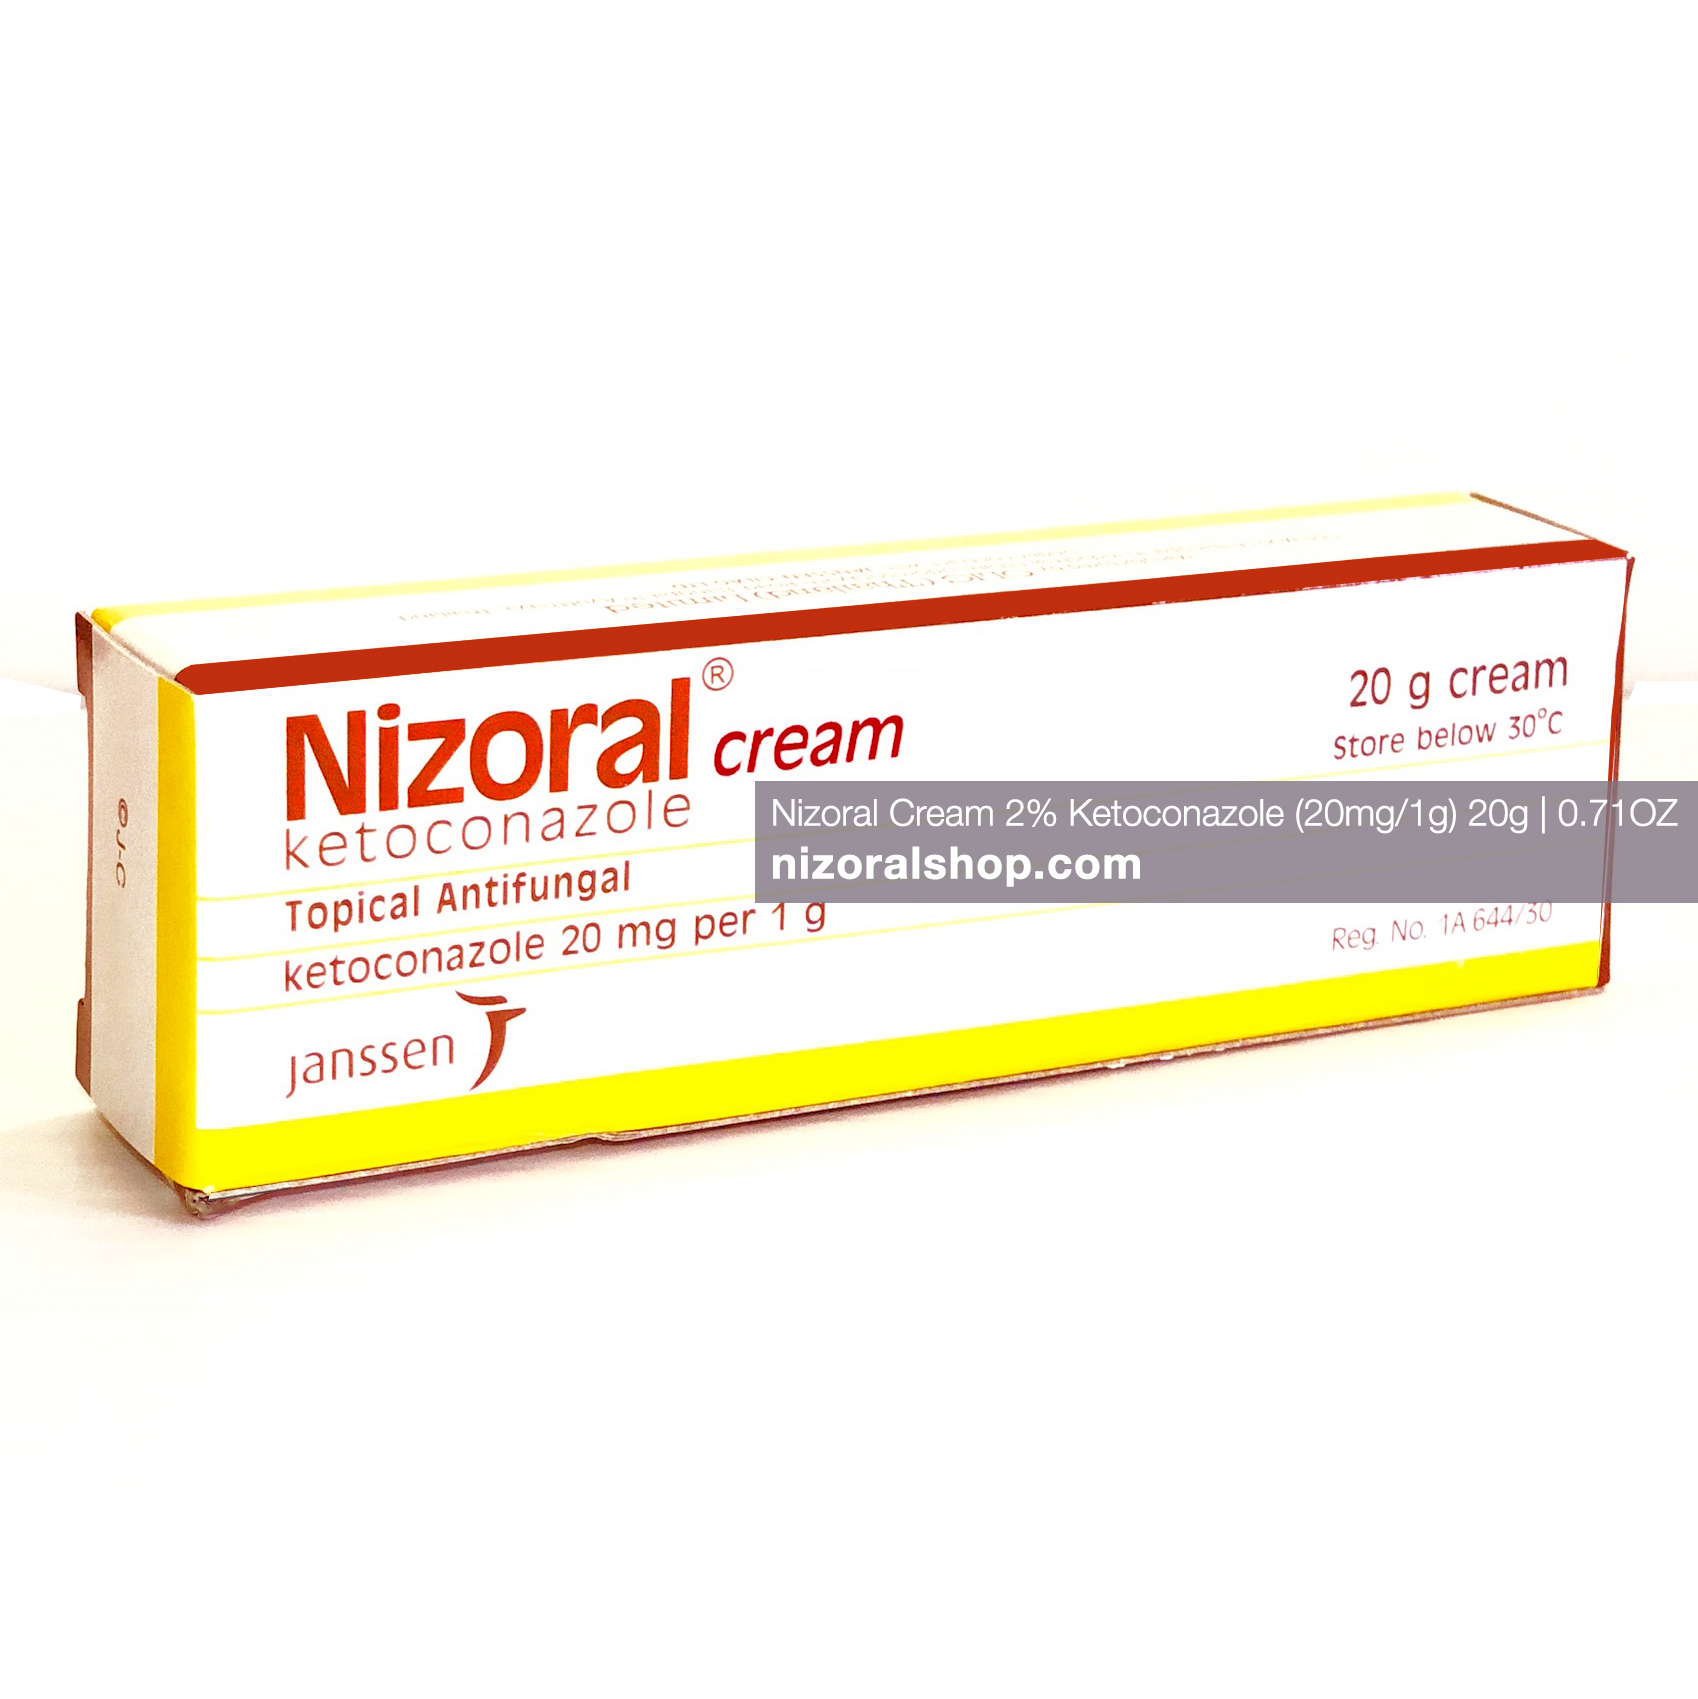 ニゾラールクリーム 20g 、1gにつき20mgのケトコナゾール含有